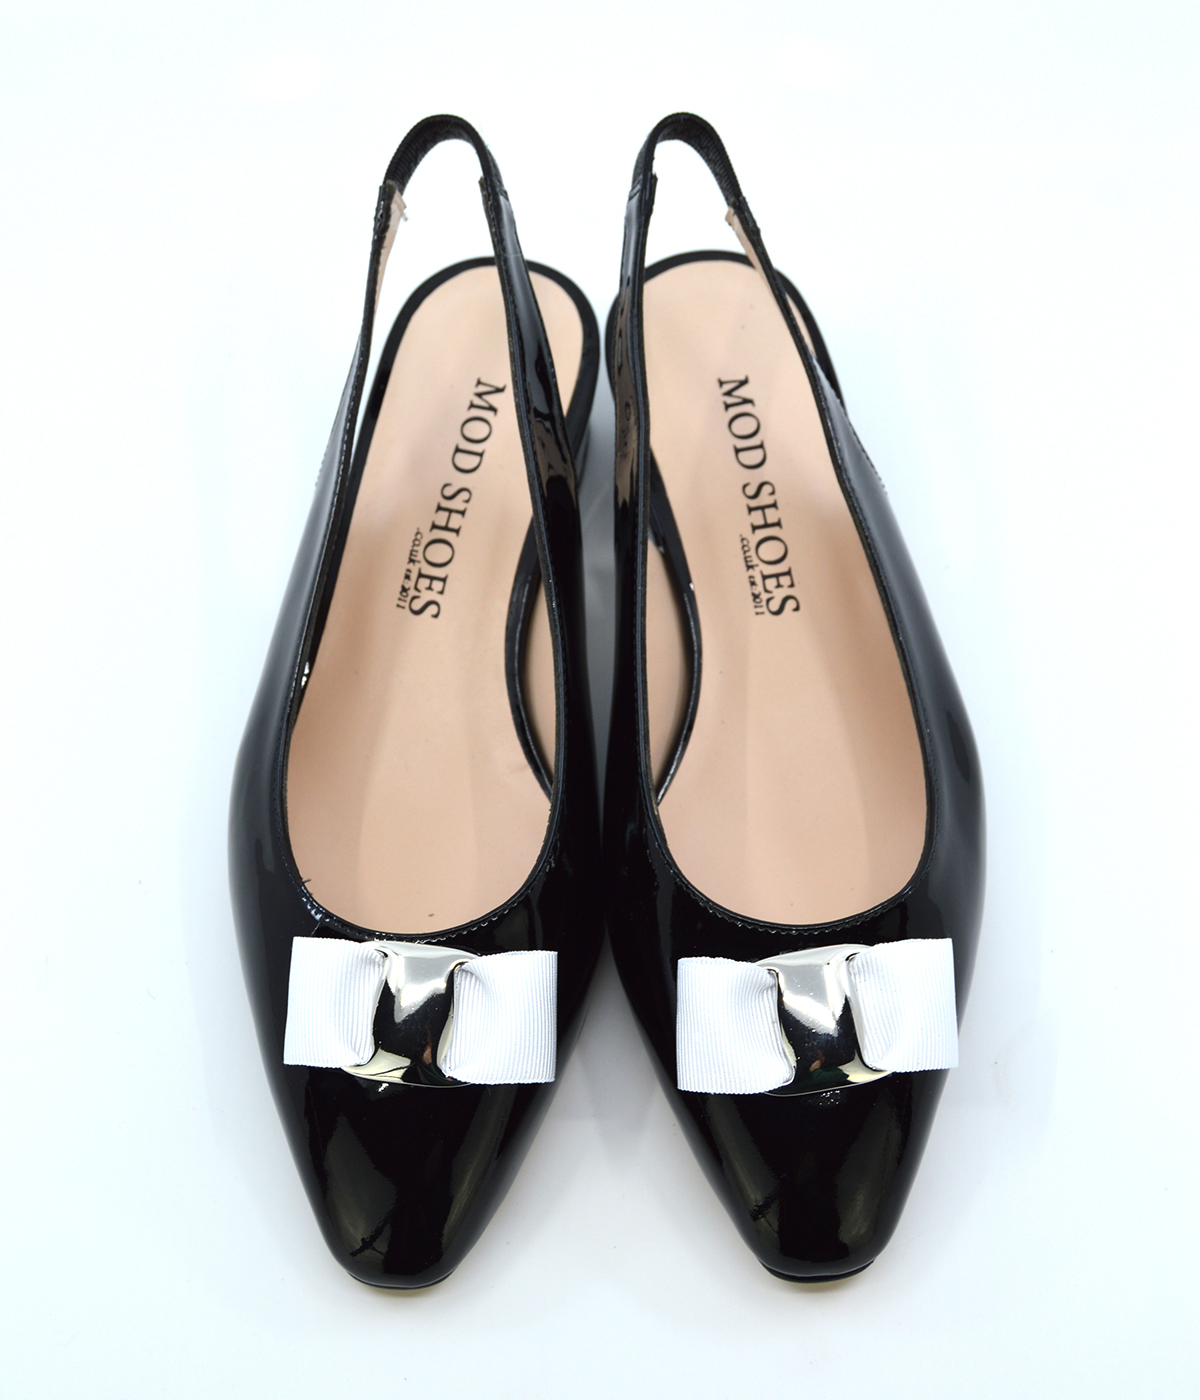 modshoes-the-sadie-black-vintage-retro-ladies-shoes-02 – Mod Shoes